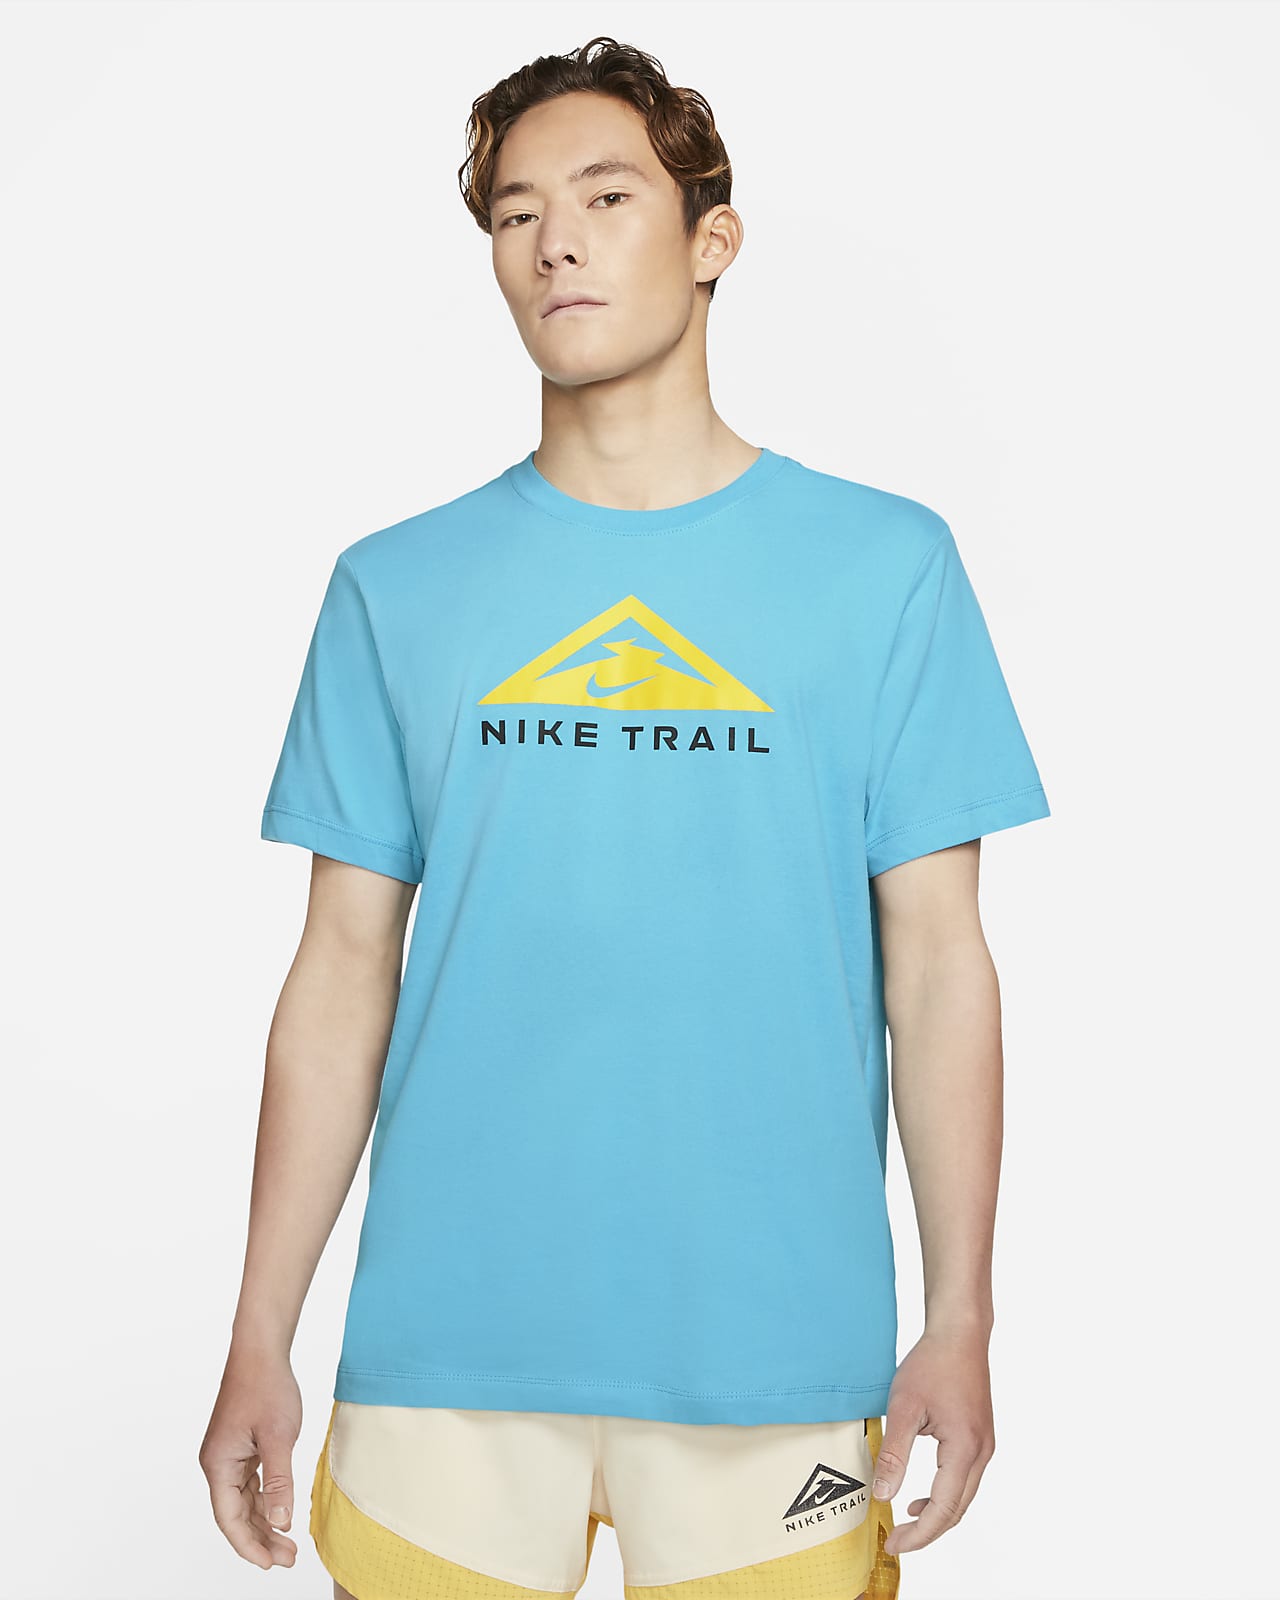 nike trail dri fit shirt